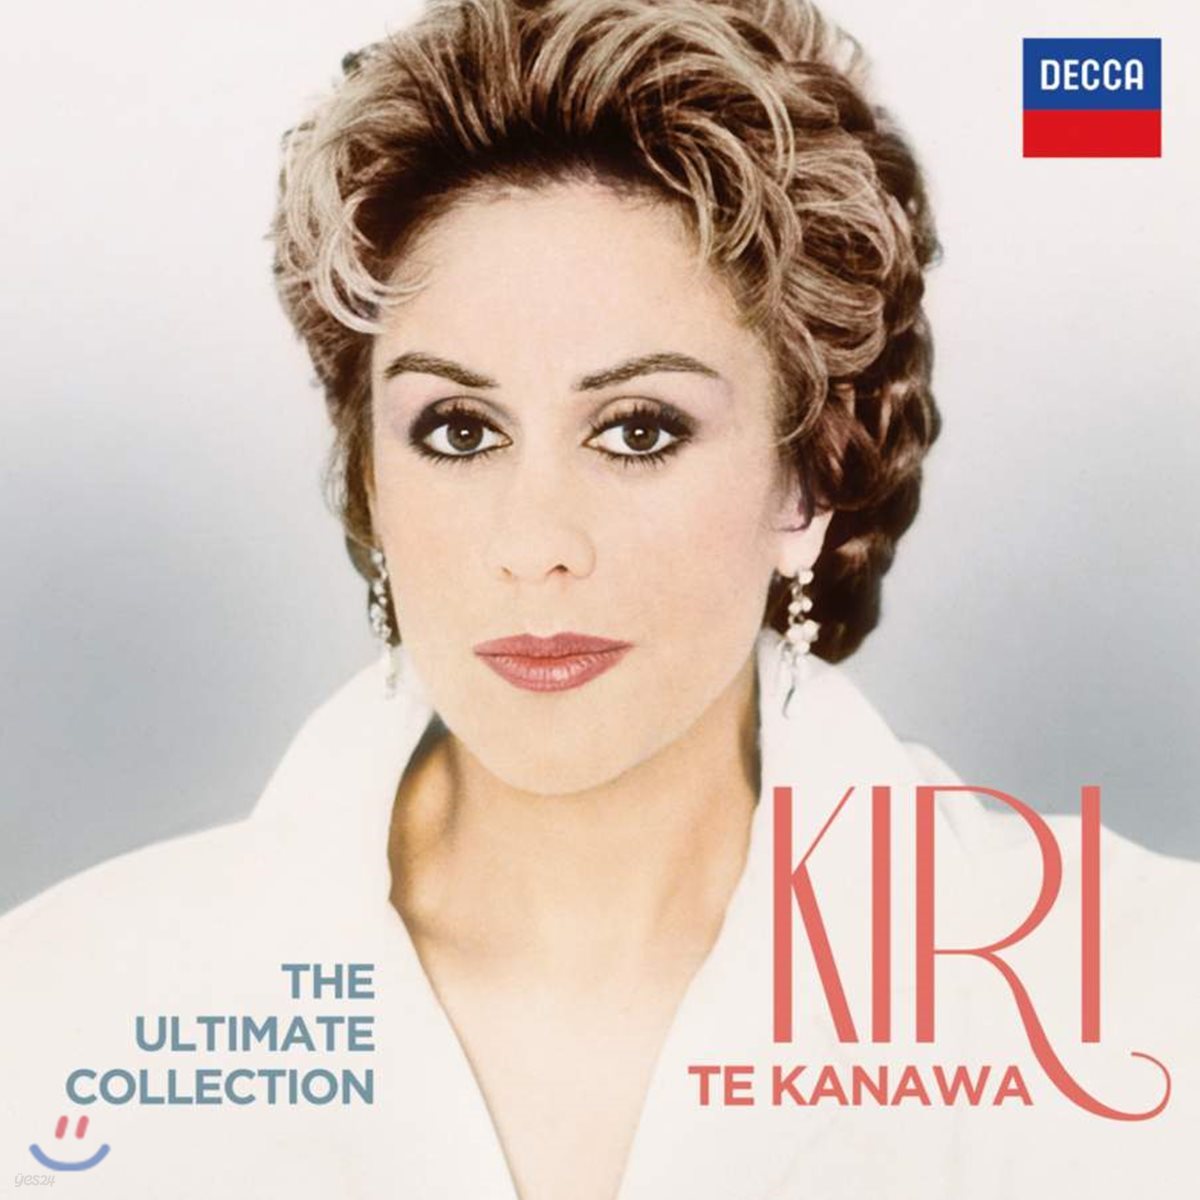 키리 테 카나와 얼티메이트 컬렉션 (Kiri Te Kanawa The Ultimate Collection)